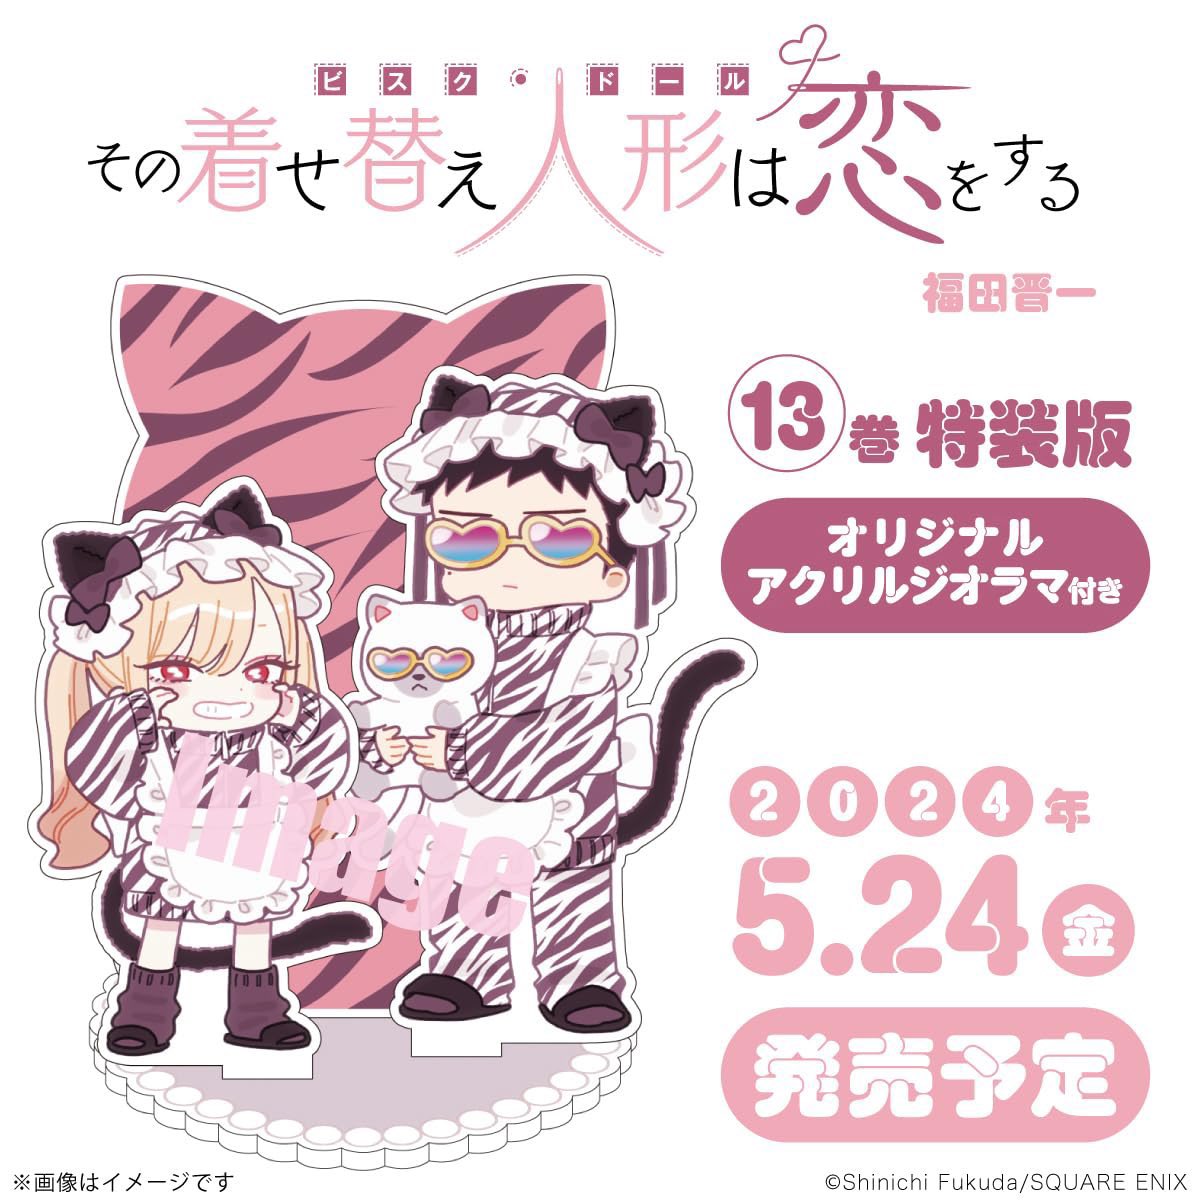 明日発売のヤングガンガンに「その着せ替え人形は恋をする」102話が掲載されております。
13巻通常版、アクリルジオラマ付き特装版が5月24日発売になります。
「その着せ替え人形は恋をする展覧会」京都会場は3月27日から開催です。
宜しくお願いします。
https://t.co/UehBRdA01e 